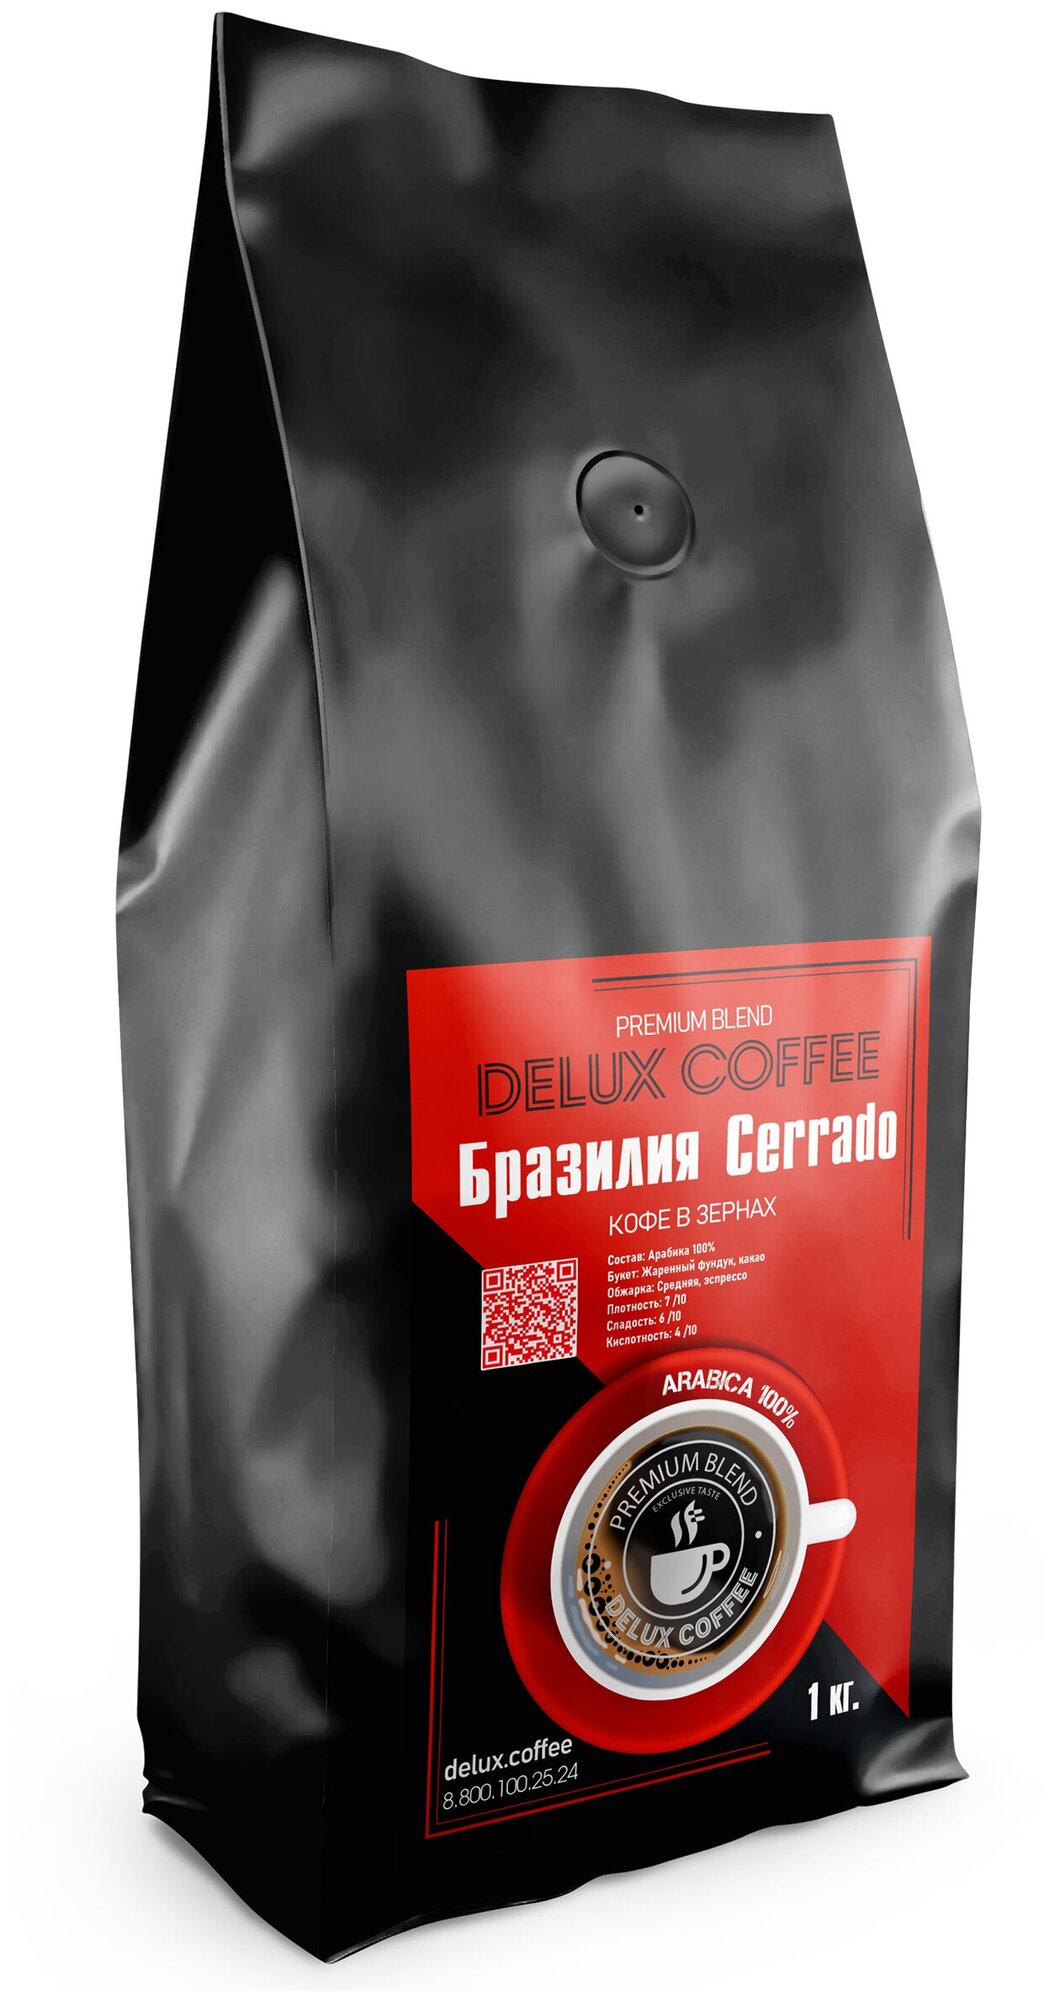 Кофе в зернах Бразилия Серрадо 1 кг.